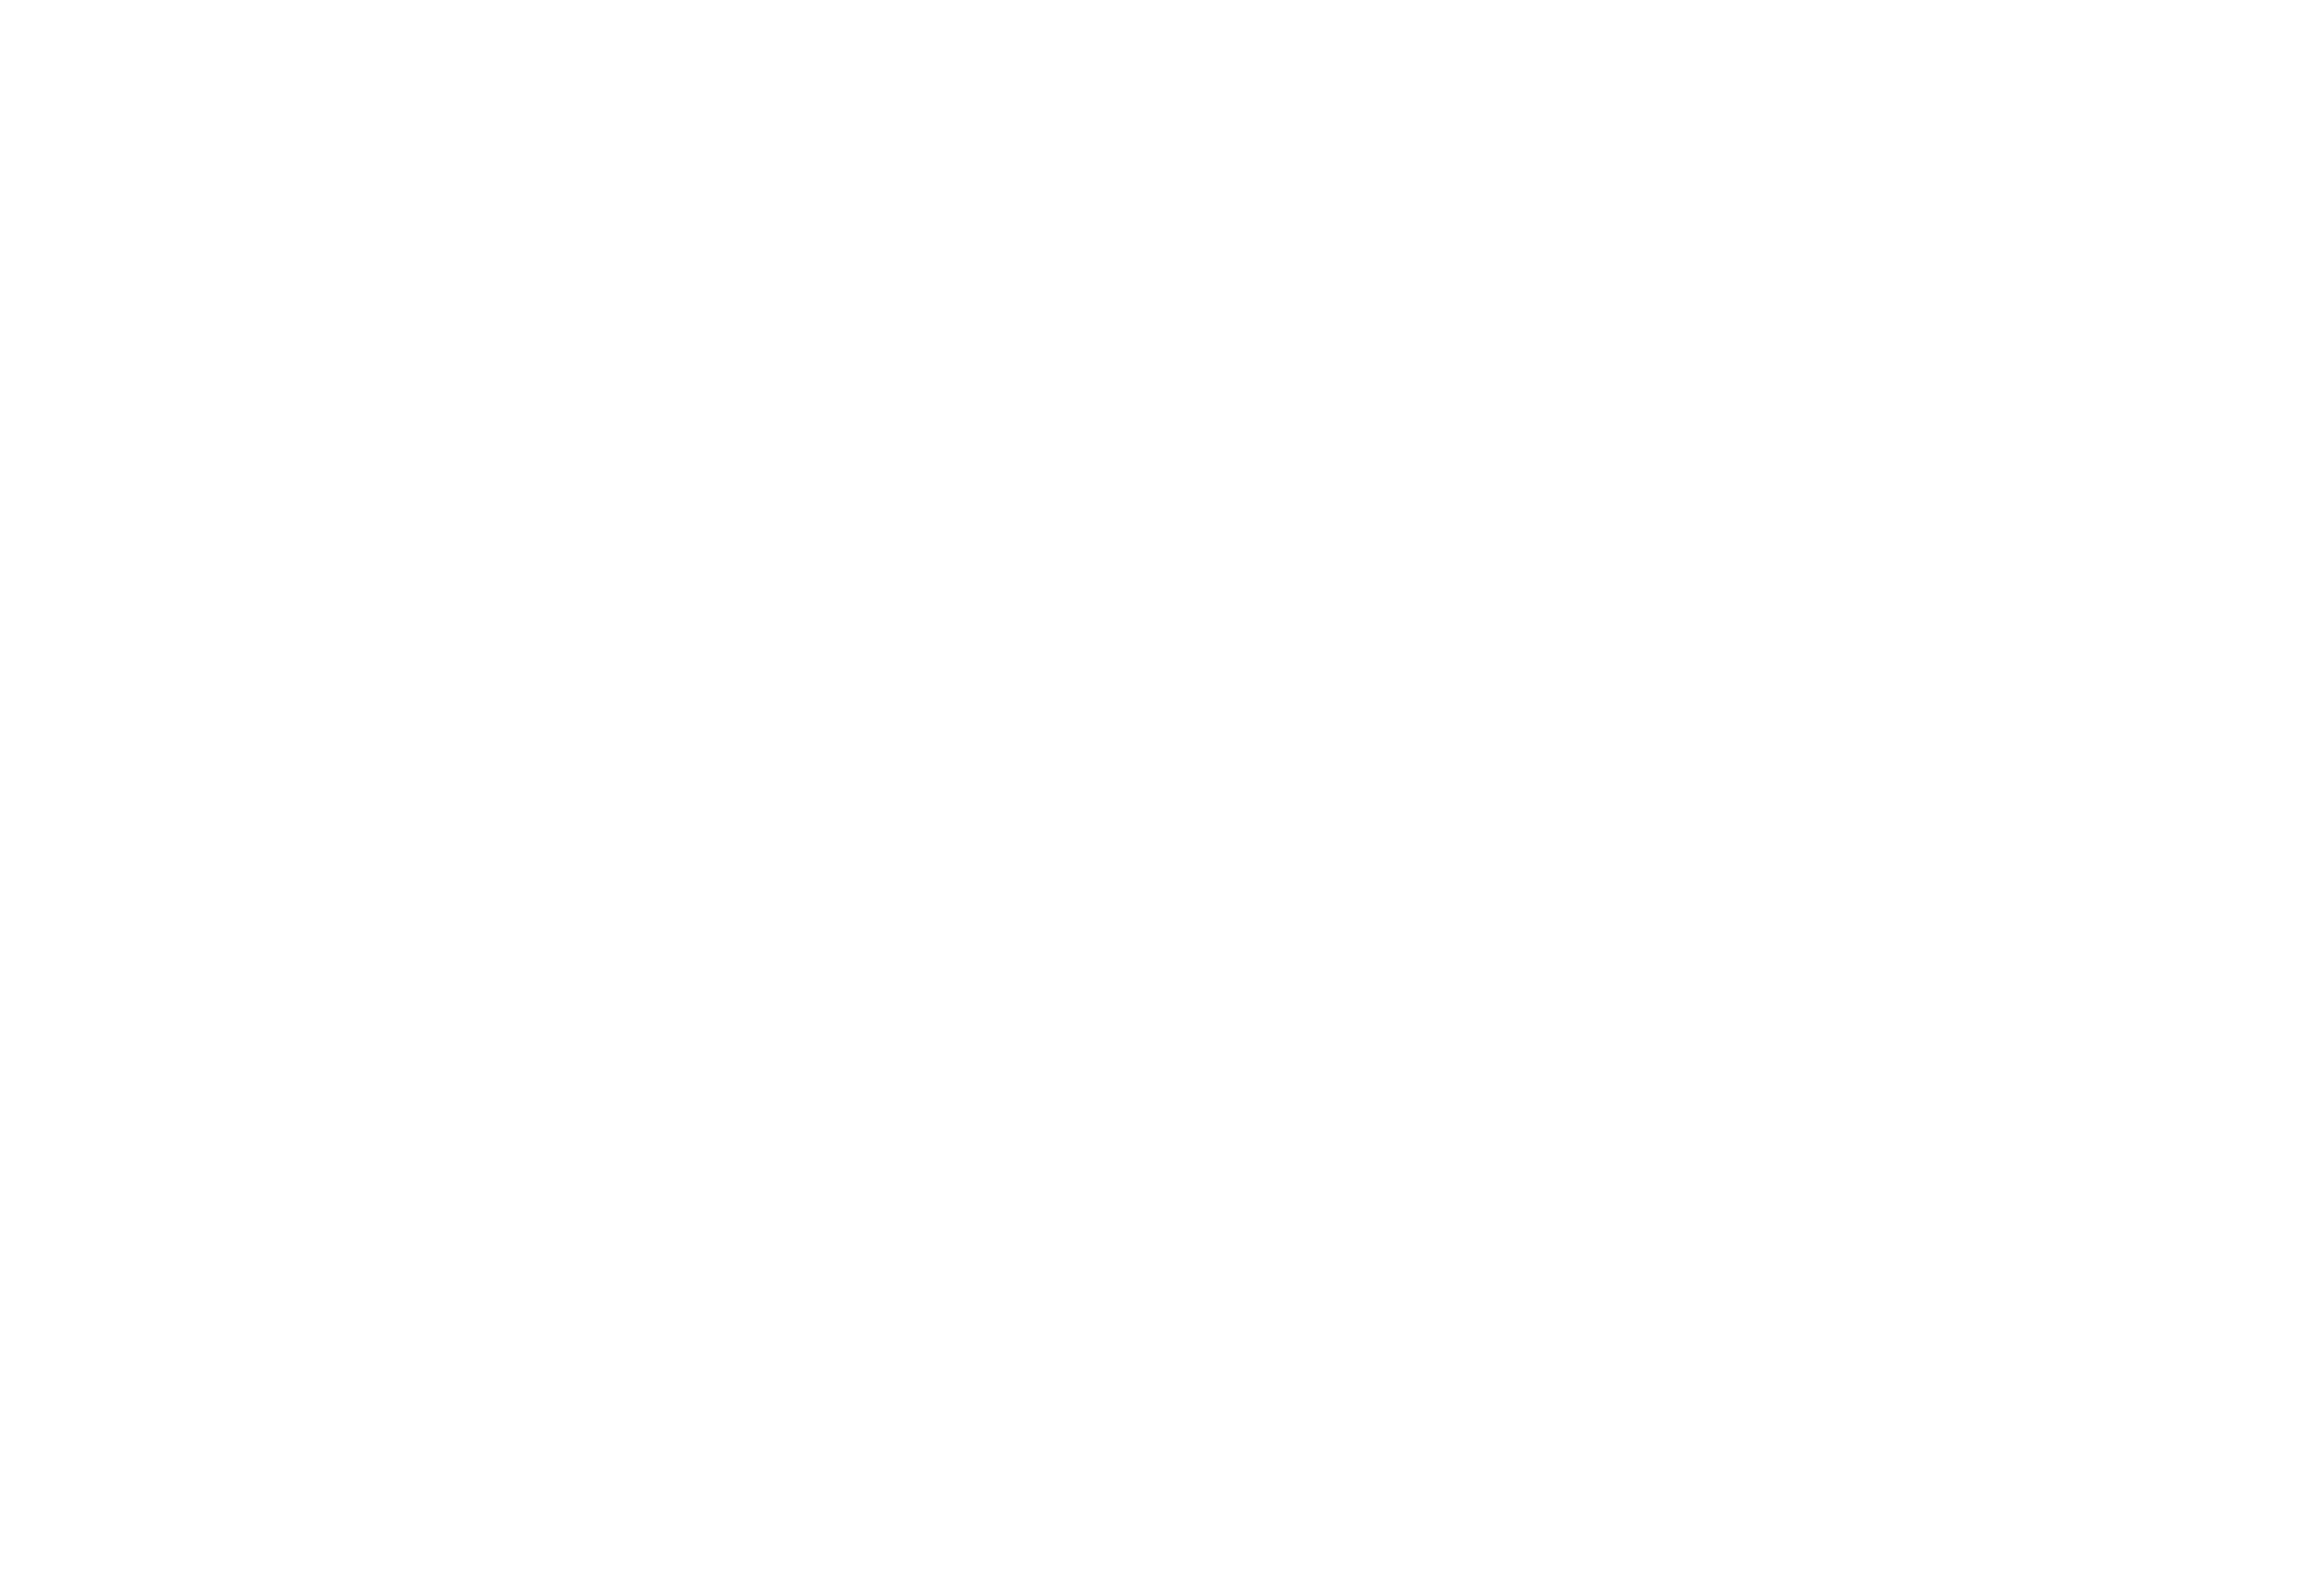 GS Metas